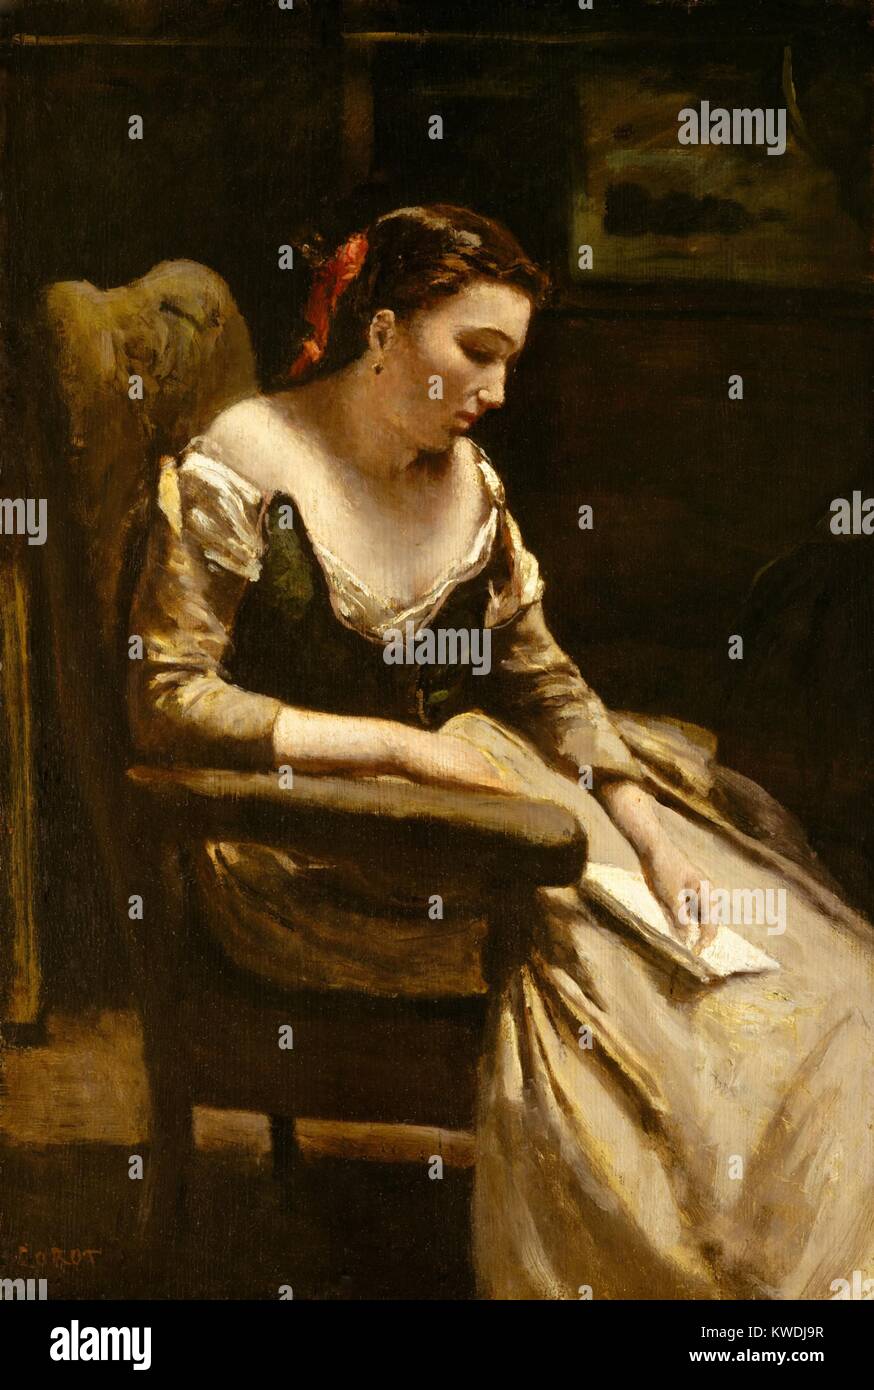 La carta, por Camille Corot, 1865, pintura francesa, oleo sobre madera. El Corot pintó esta figura con fuertes luces y sombras que la mayoría de sus obras (BSLOC 2017 9 97) Foto de stock